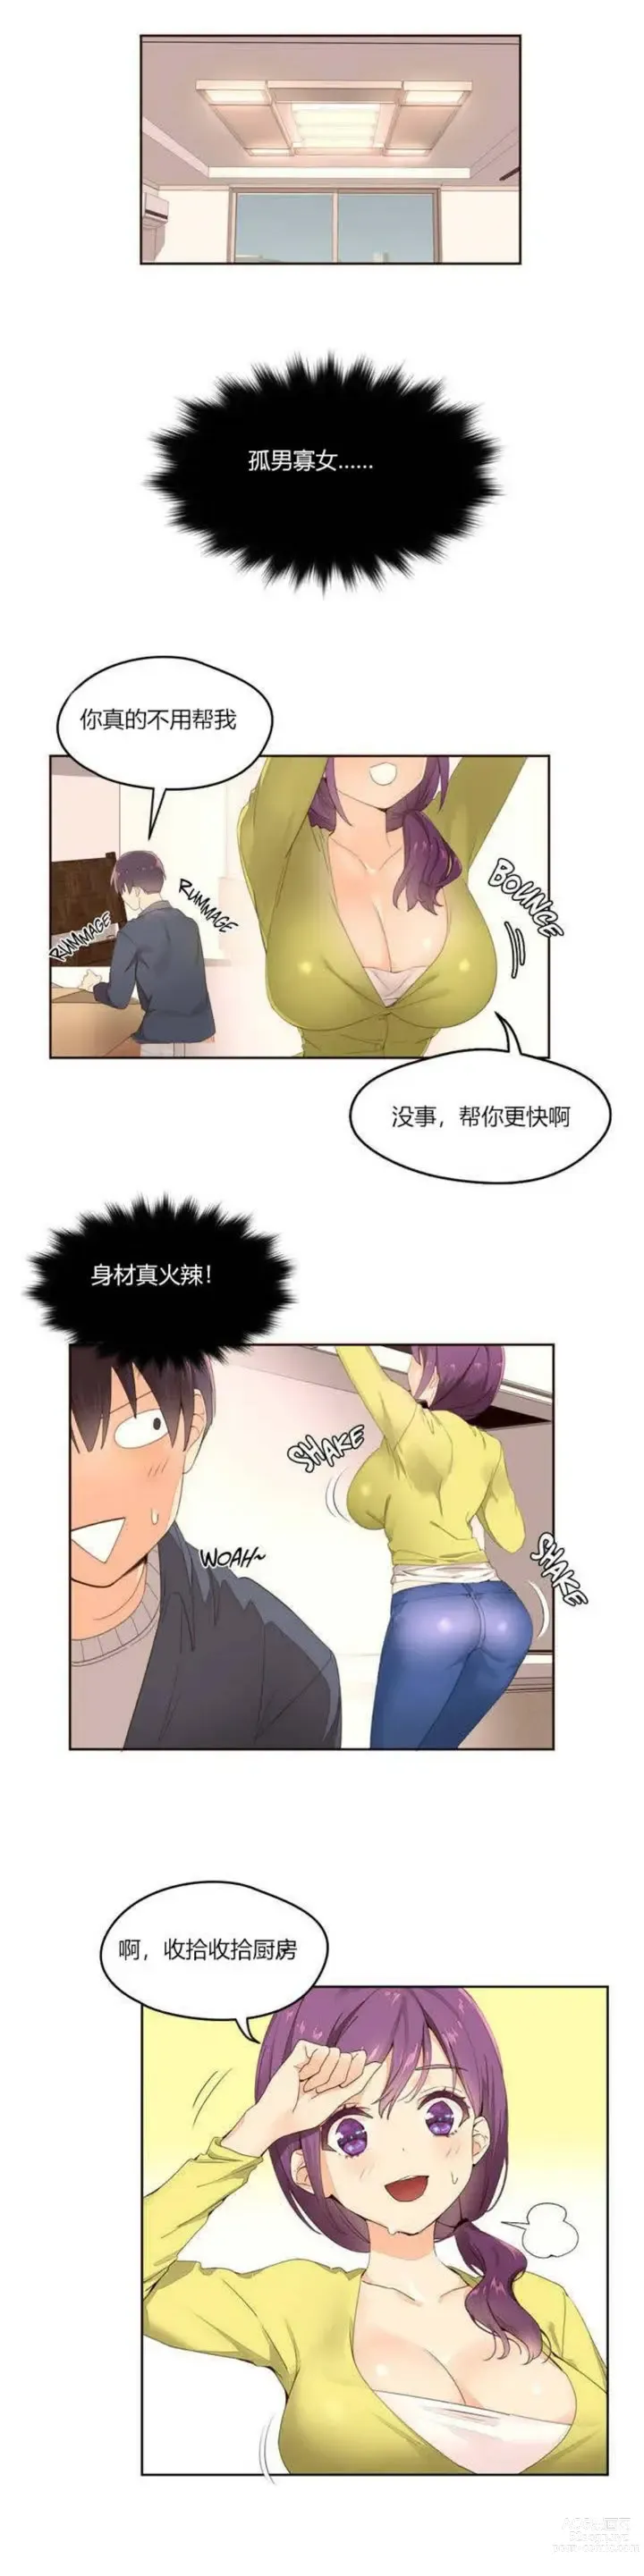 Page 23 of manga 秘香／費洛蒙香水／Pheromone Holic